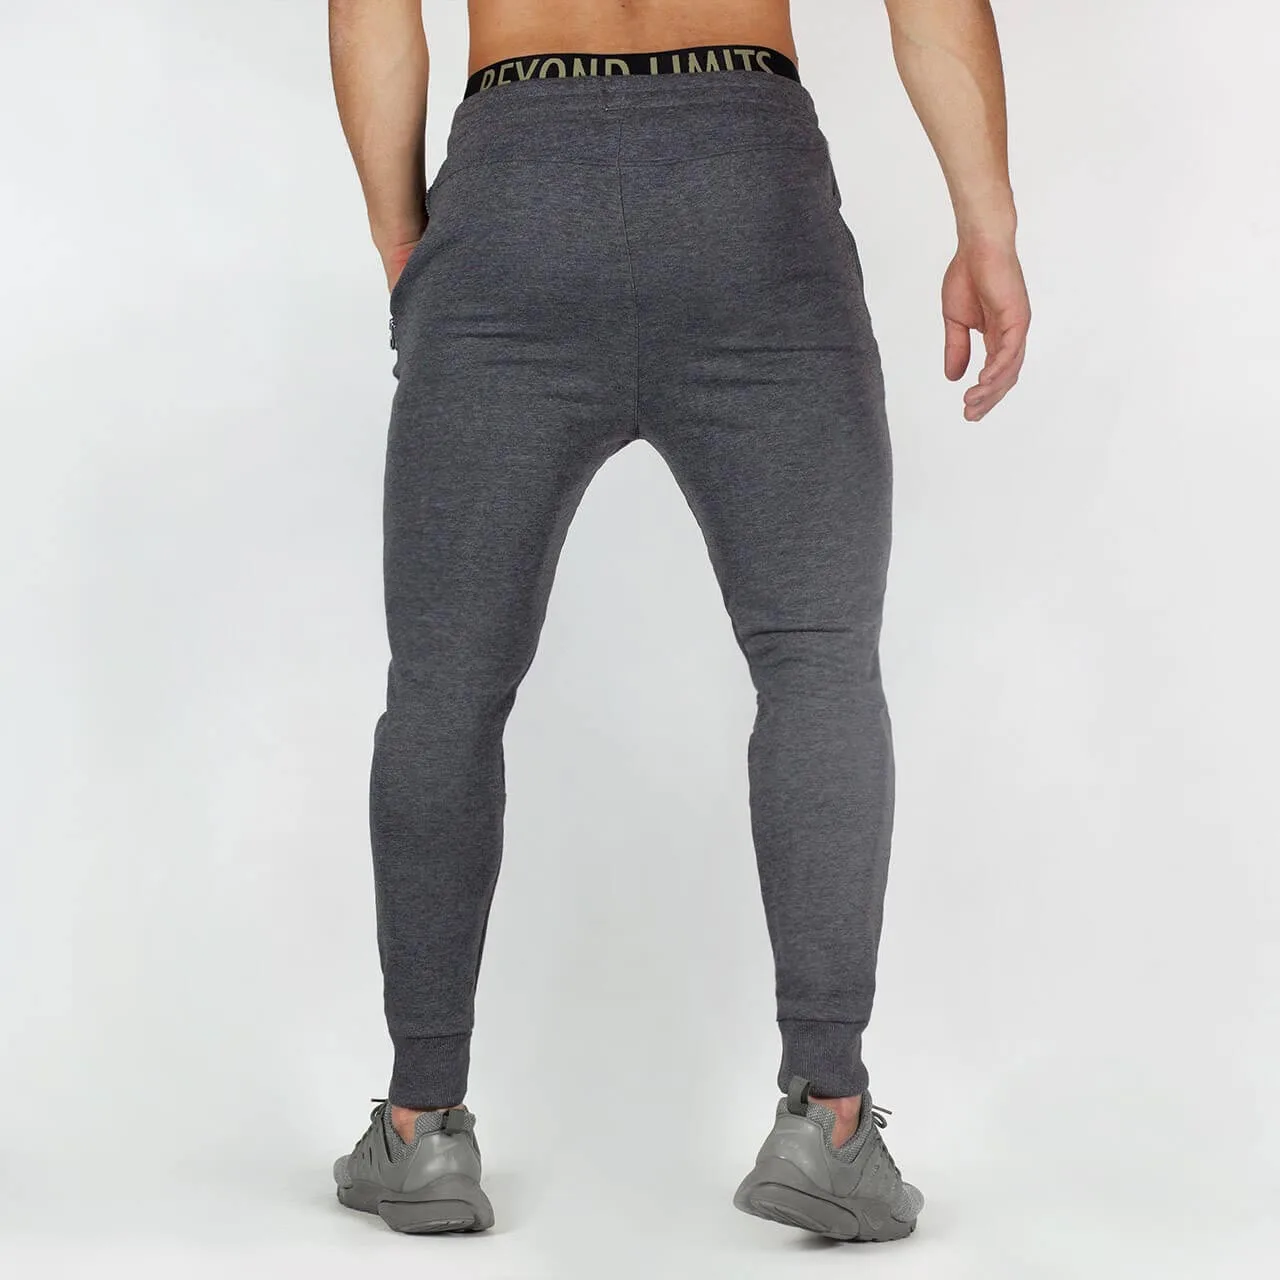 Мужские тренировочные брюки, Брендовые мужские брюки, повседневные спортивные штаны, серые повседневные эластичные хлопковые спортивные штаны для фитнеса и тренировок